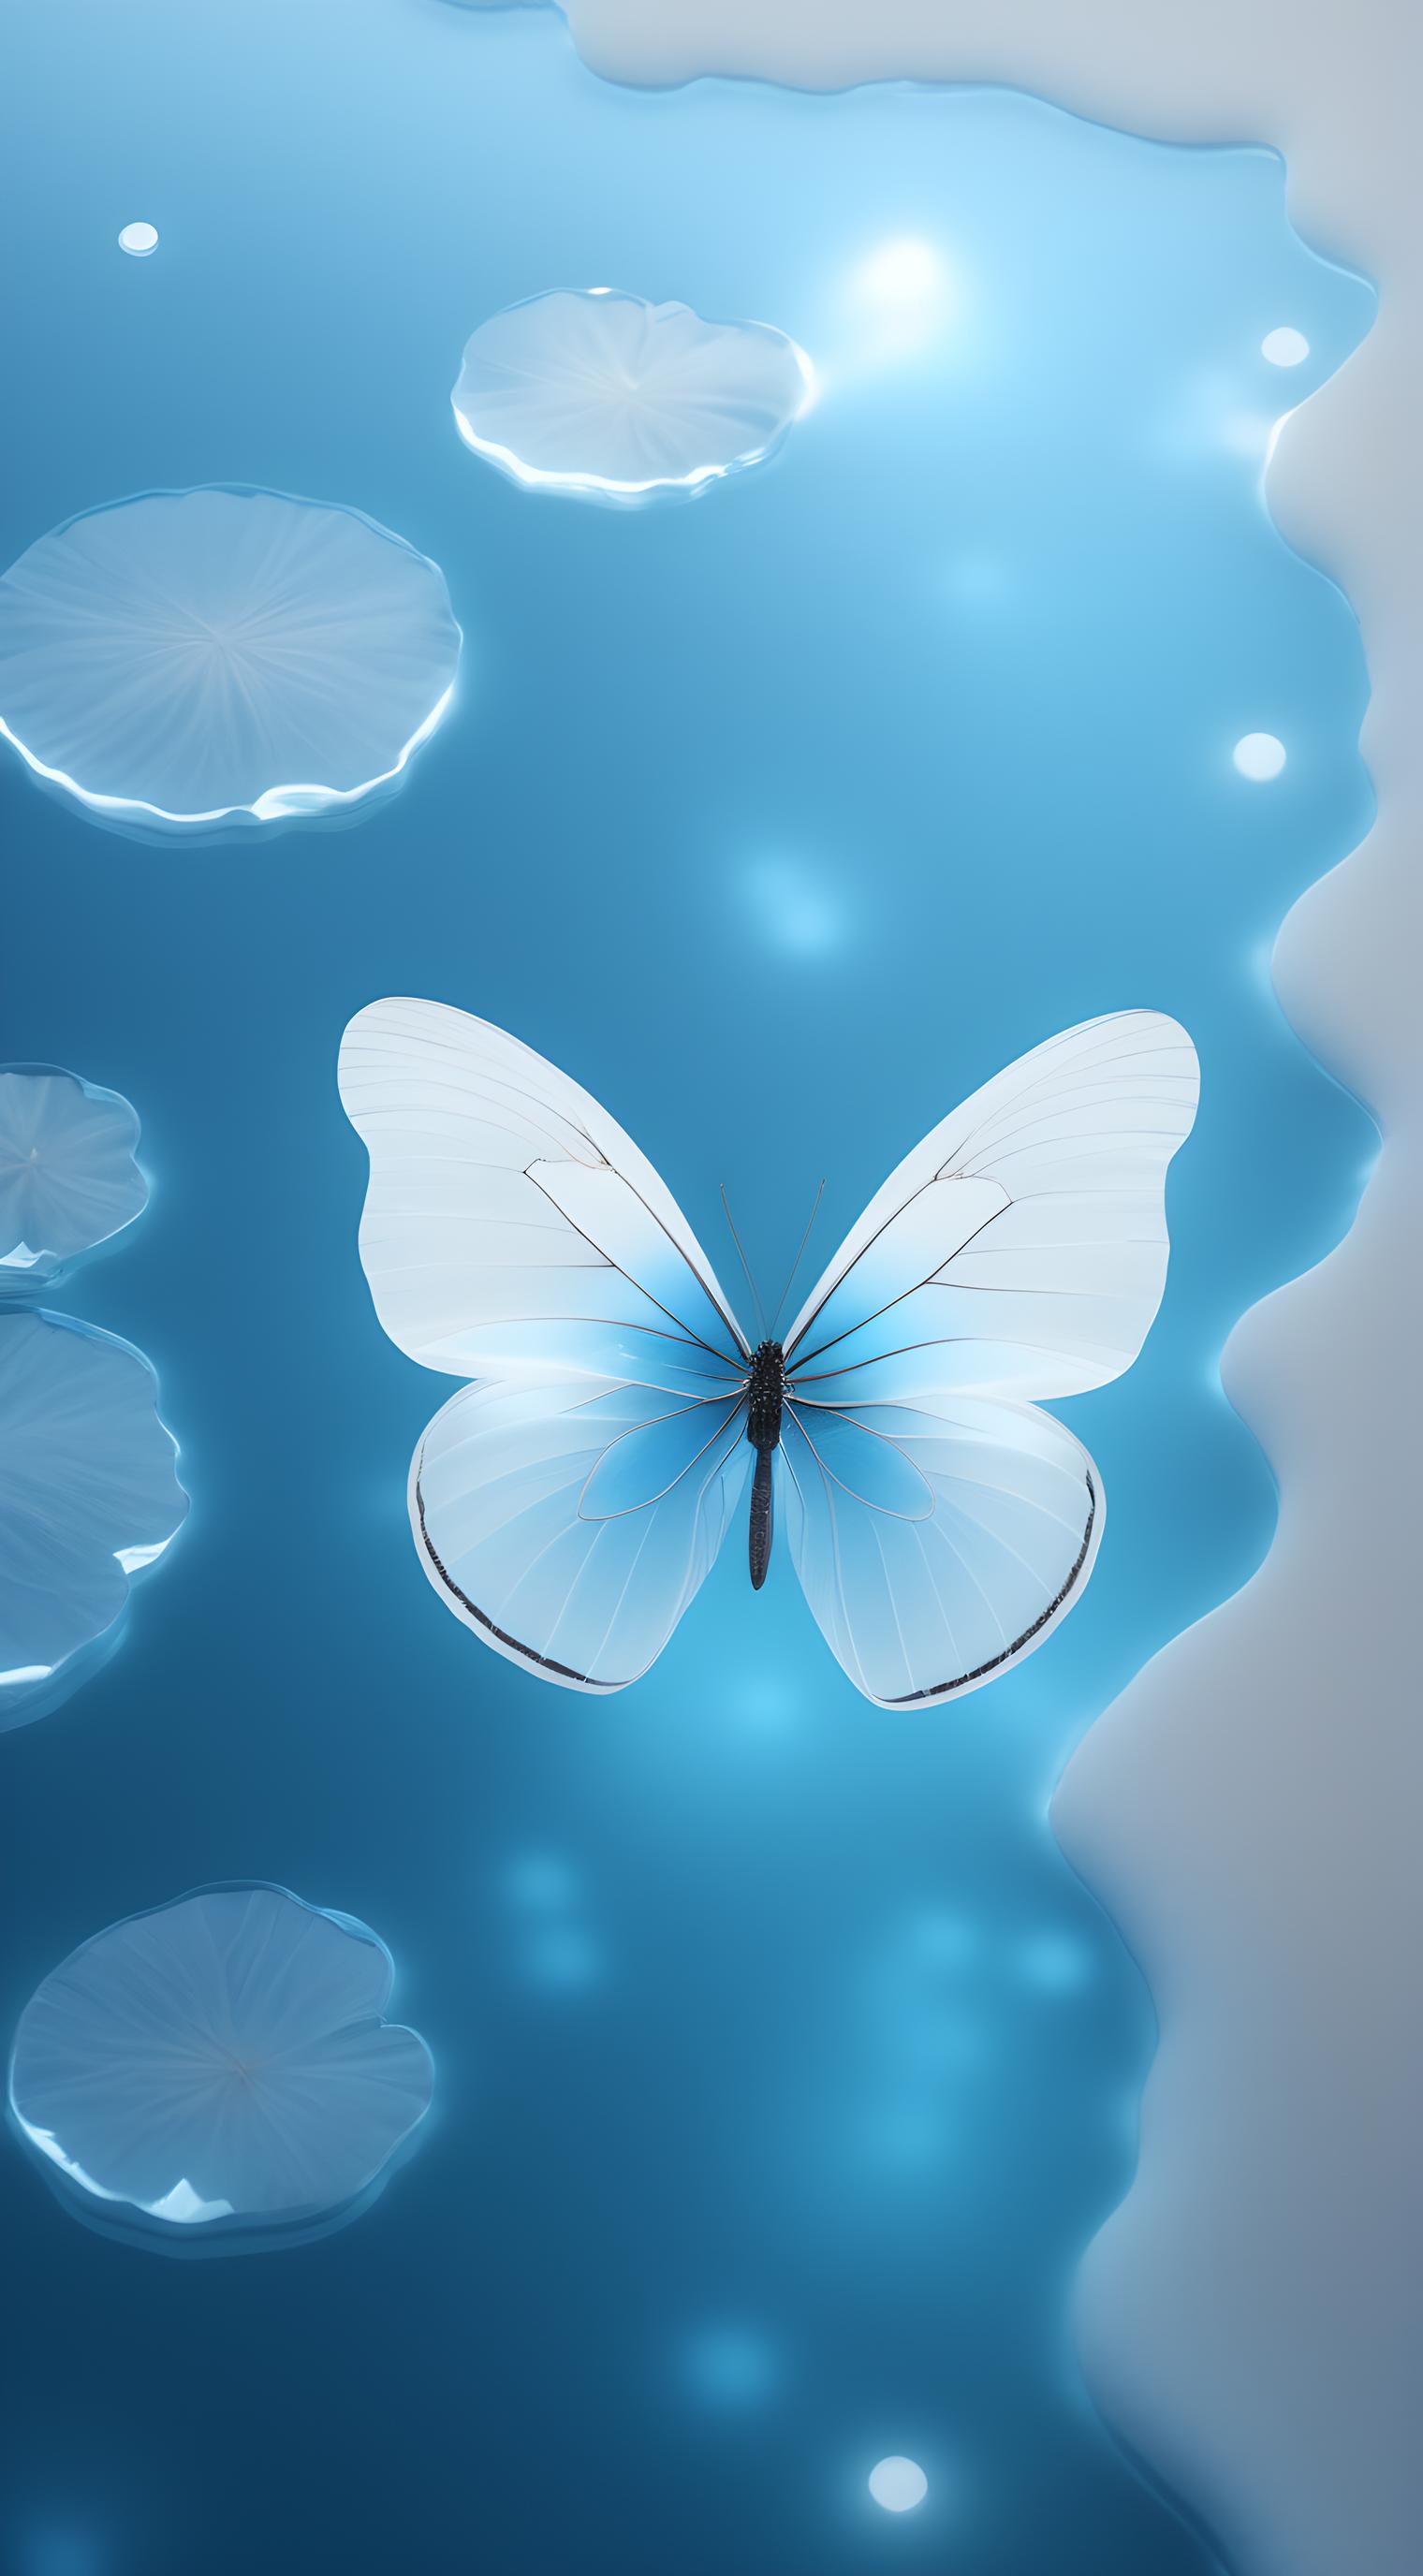 水晶蓝色蝴蝶